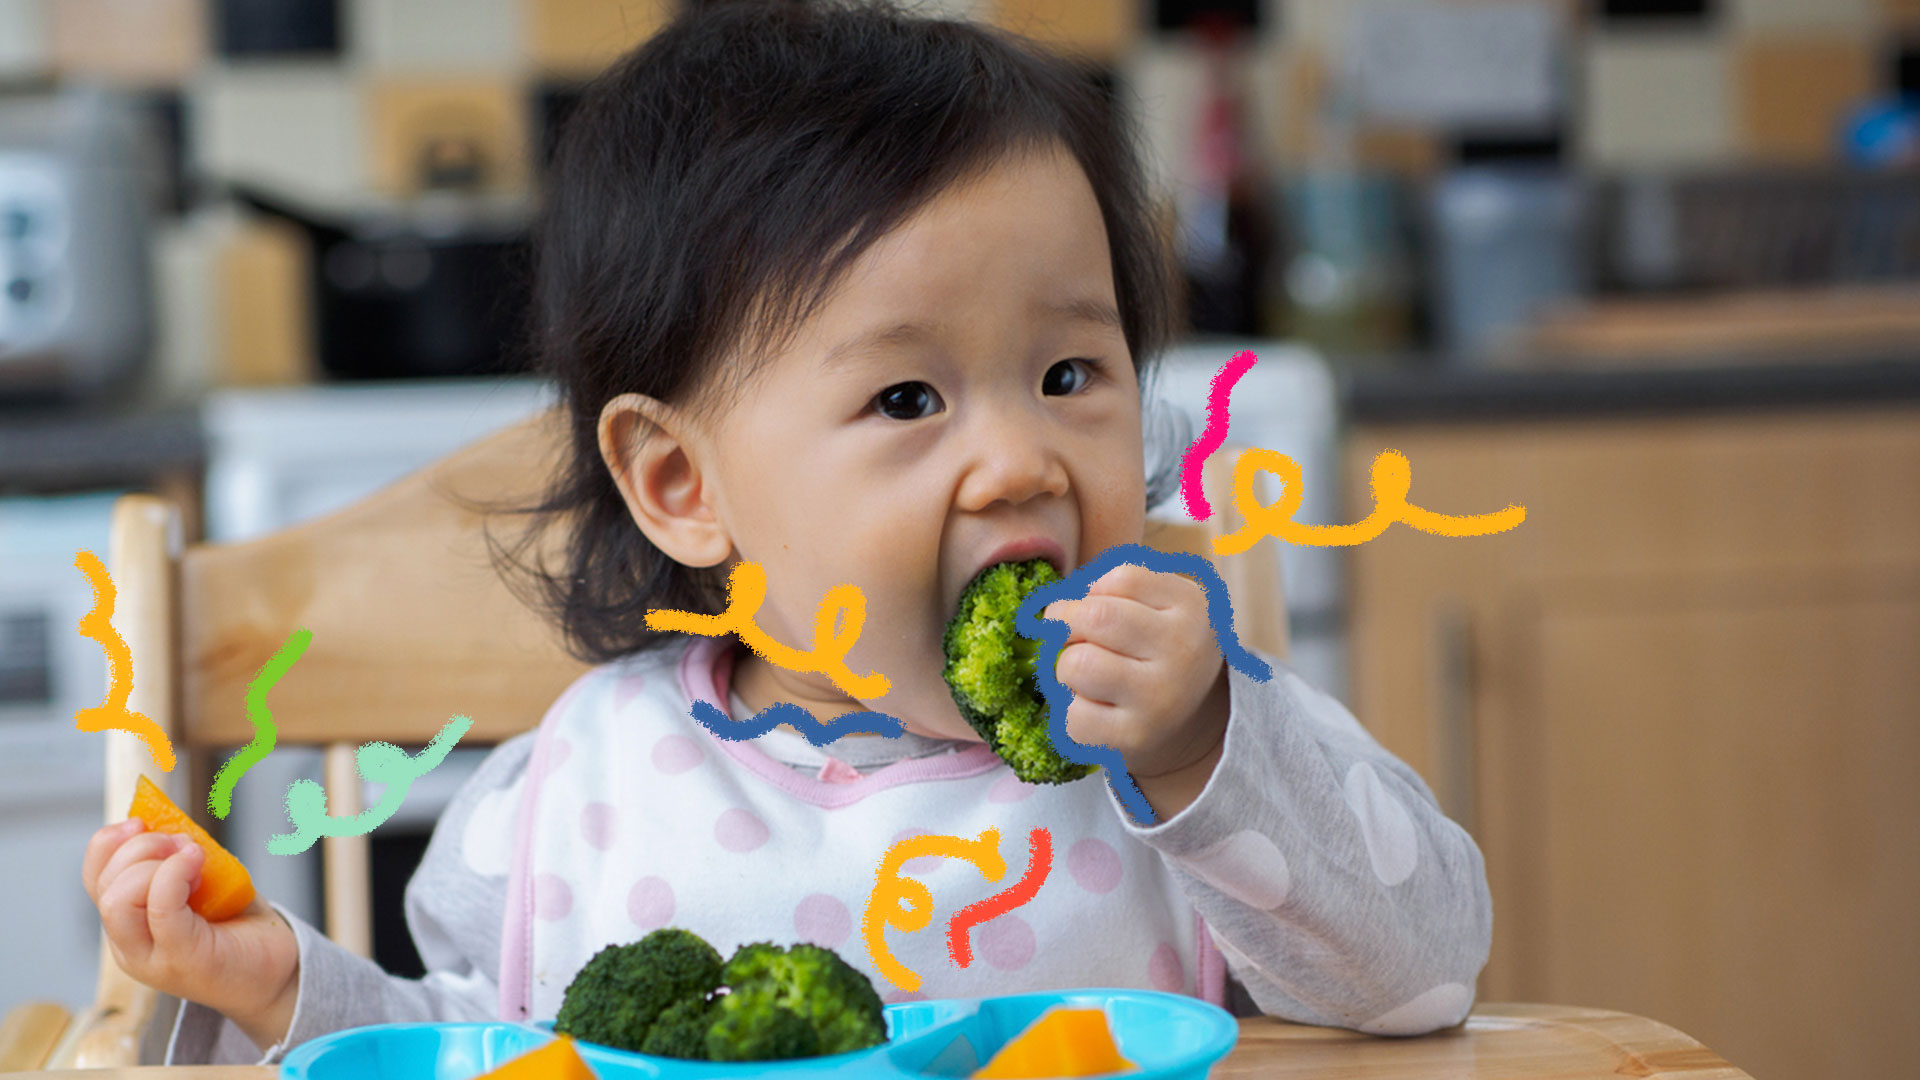 Crianças vegetarianas: não comer carne prejudica o desenvolvimento?